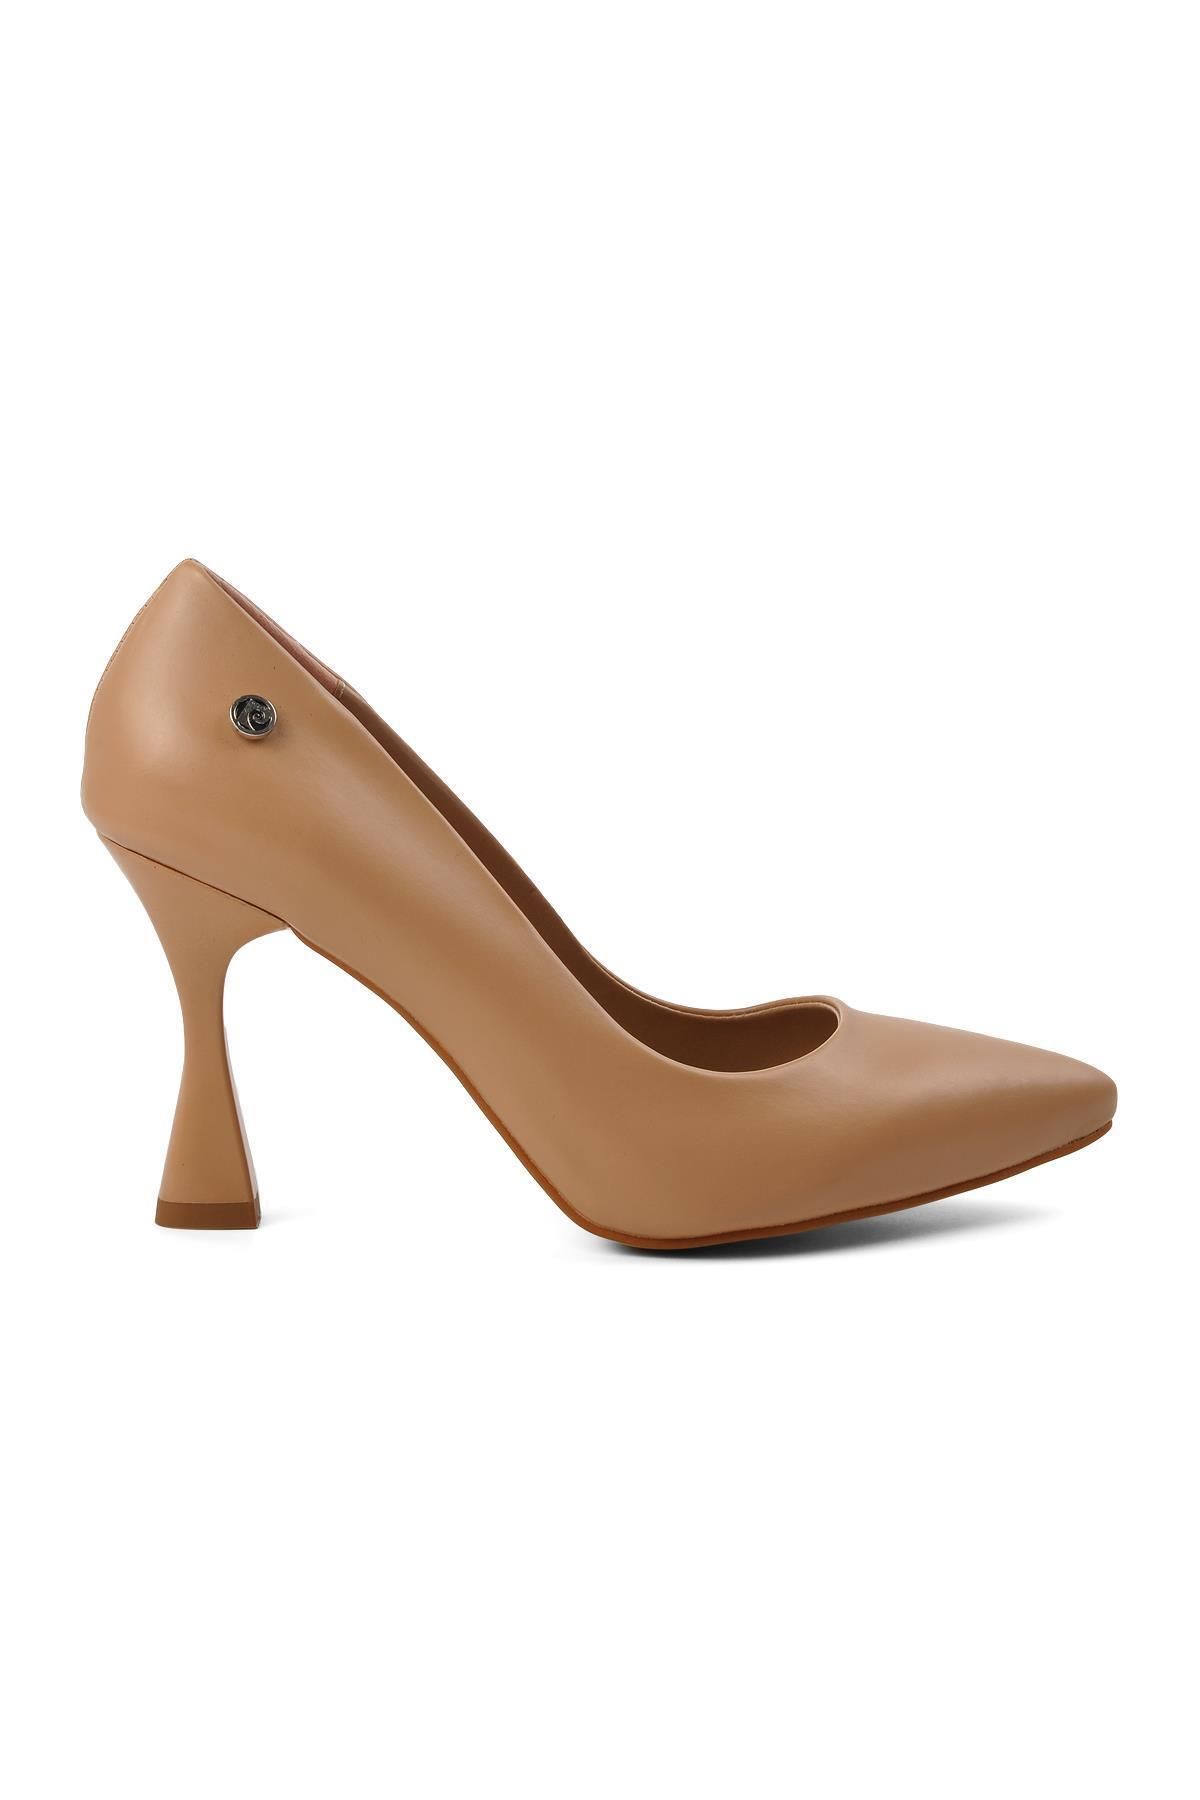 Pierre Cardin Pc-52281 Bej Kadın Topuklu Ayakkabı